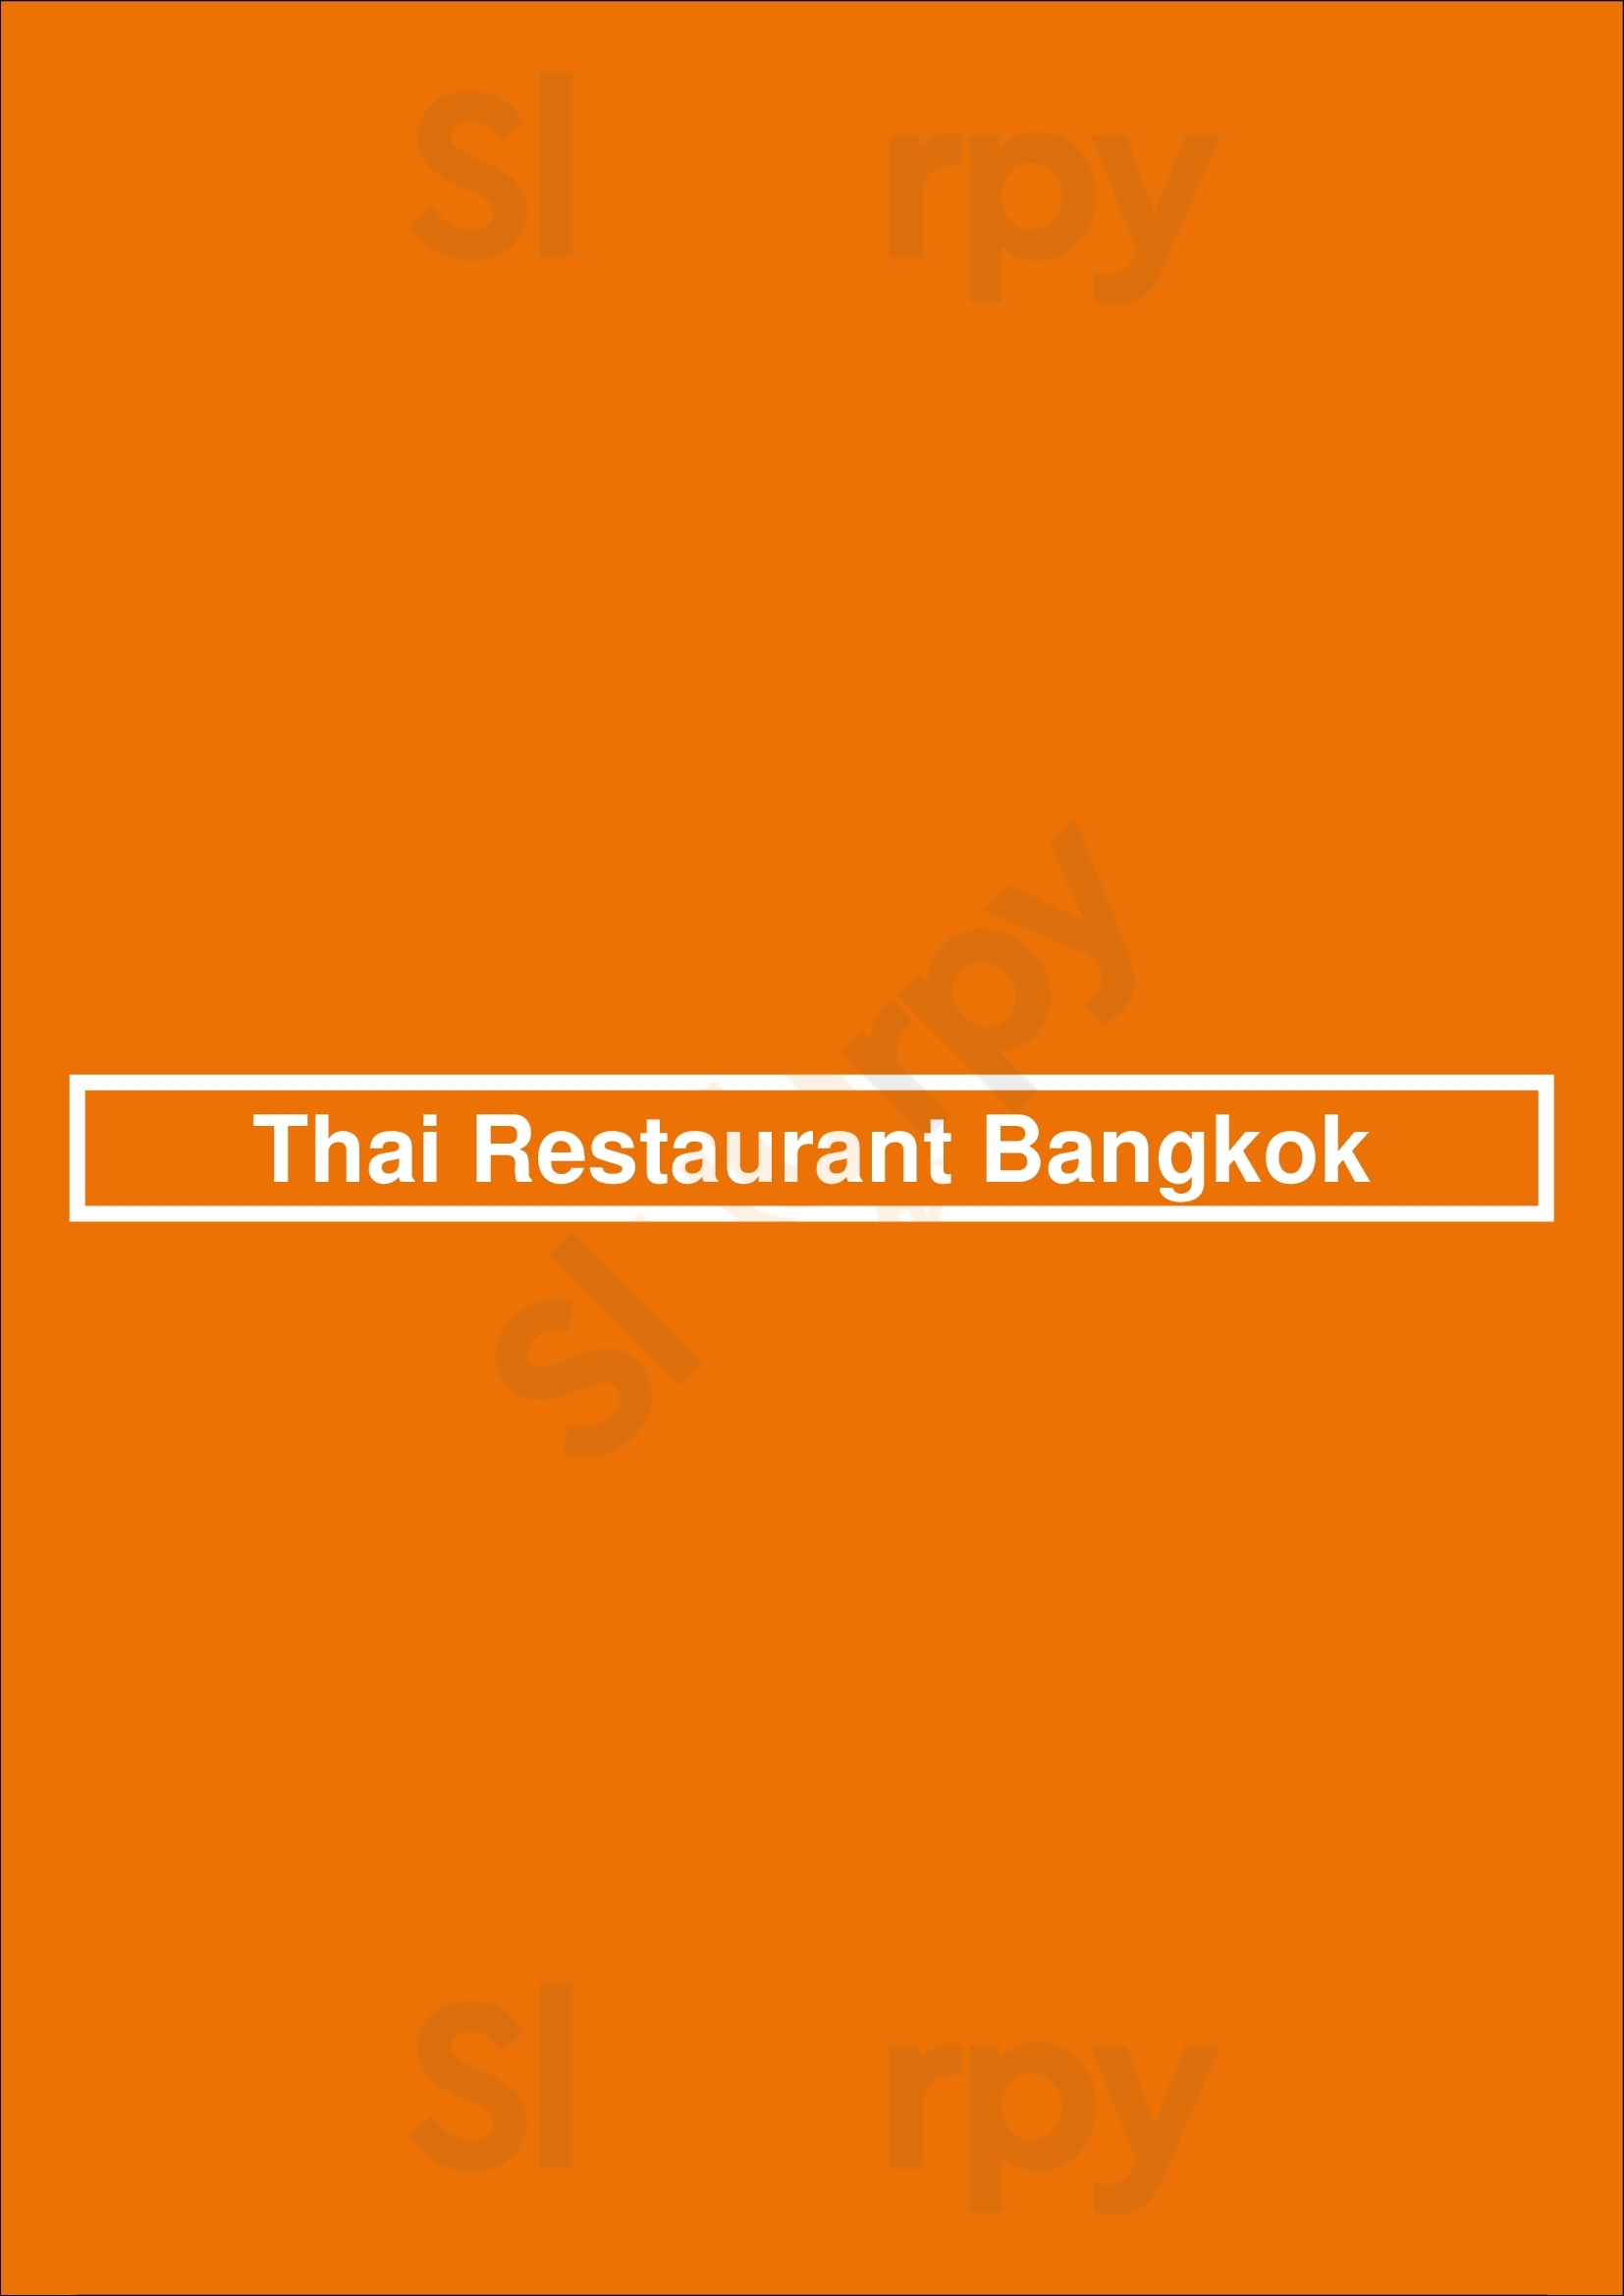 Thai Restaurant Bangkok Amsterdam Menu - 1